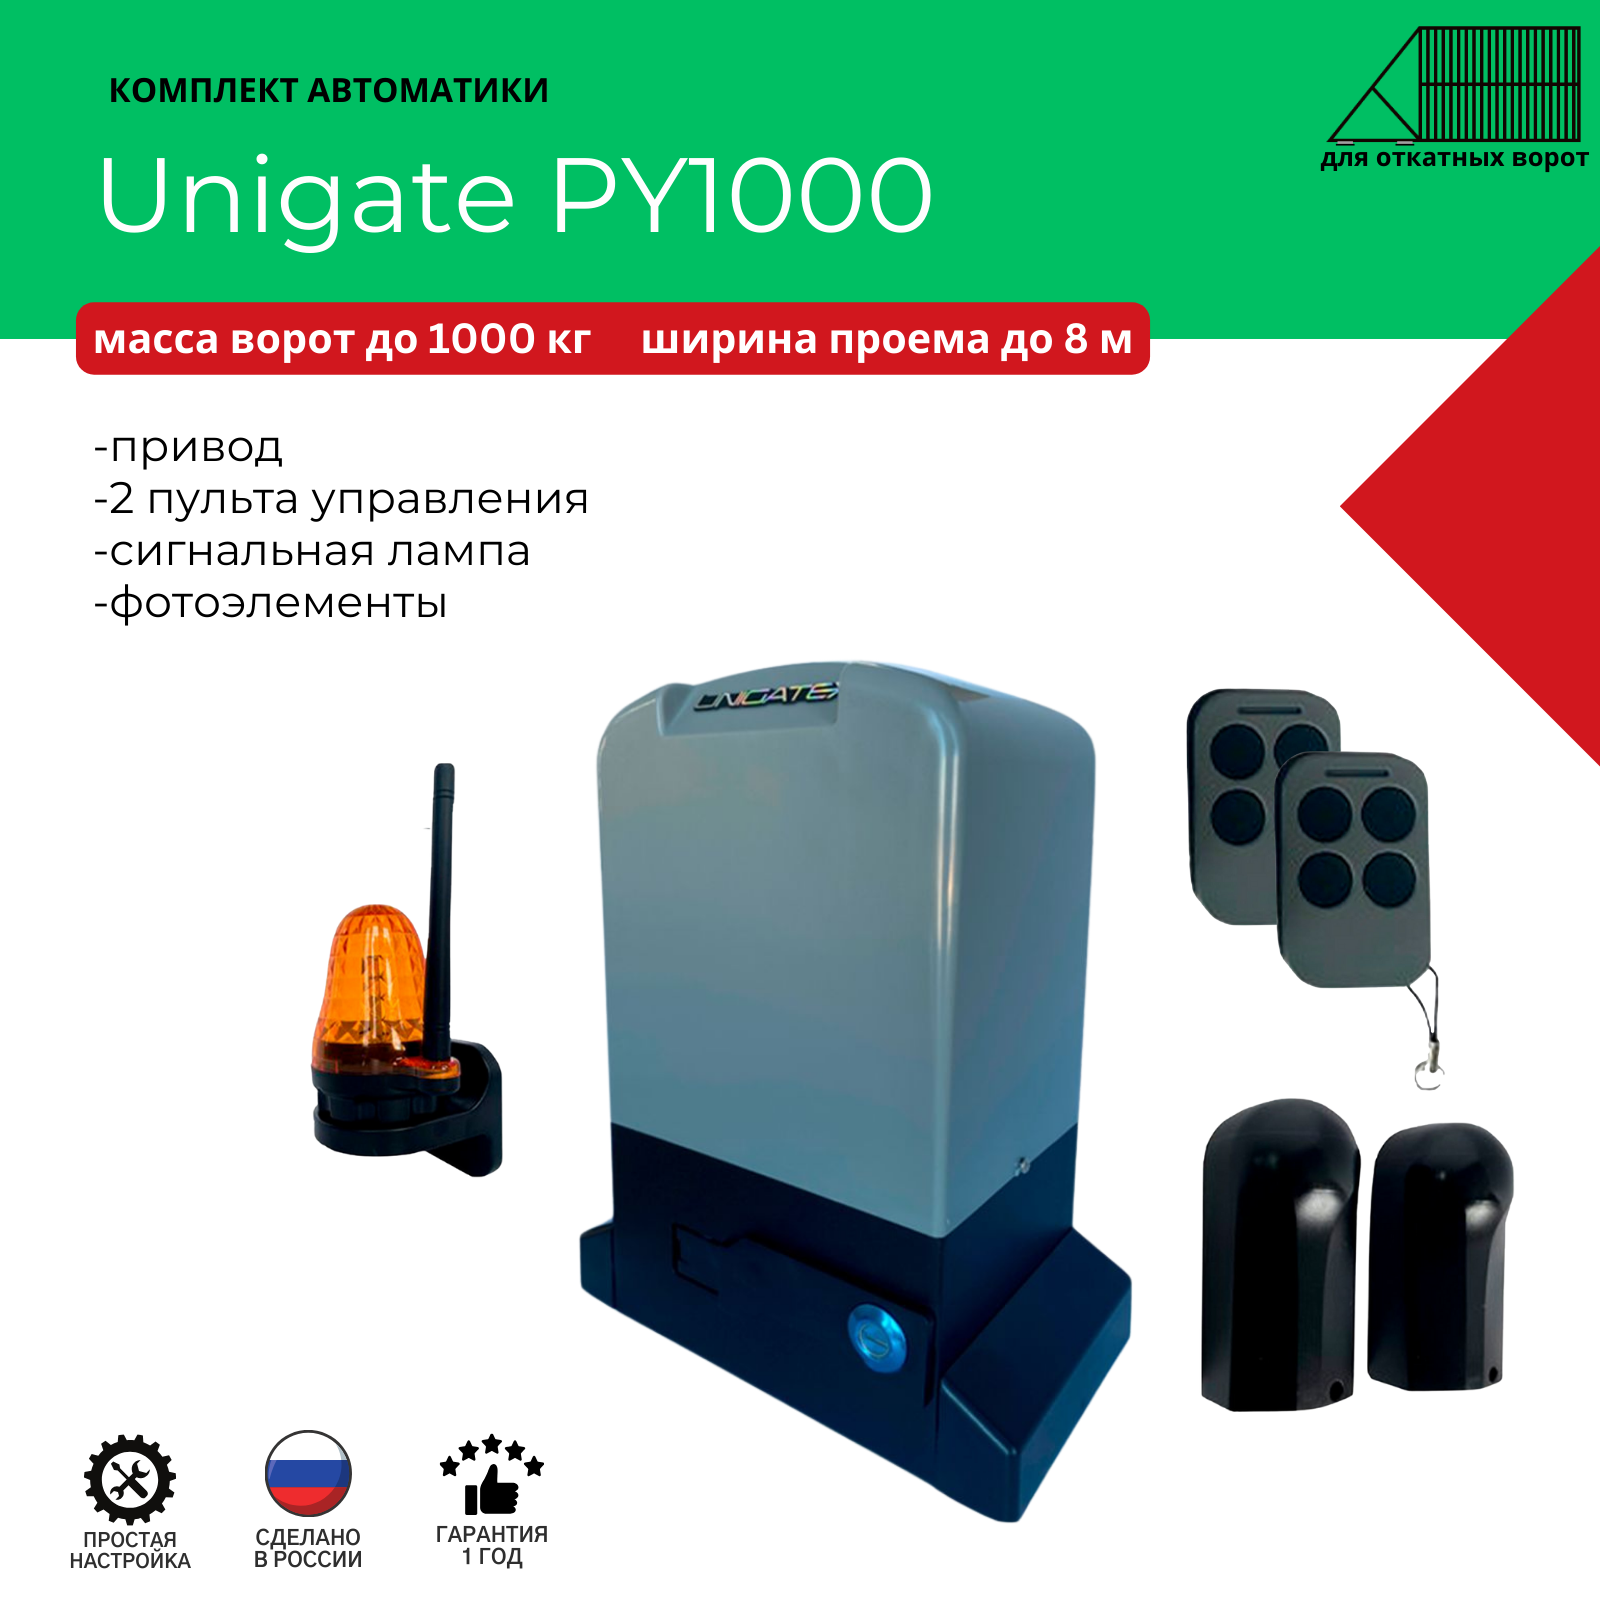 Автоматика для откатных ворот Unigate PY1000 массой до 1000кг, ширина проема 8м (привод, 2 пульта, фотоэлементы, сигнальная лампа)